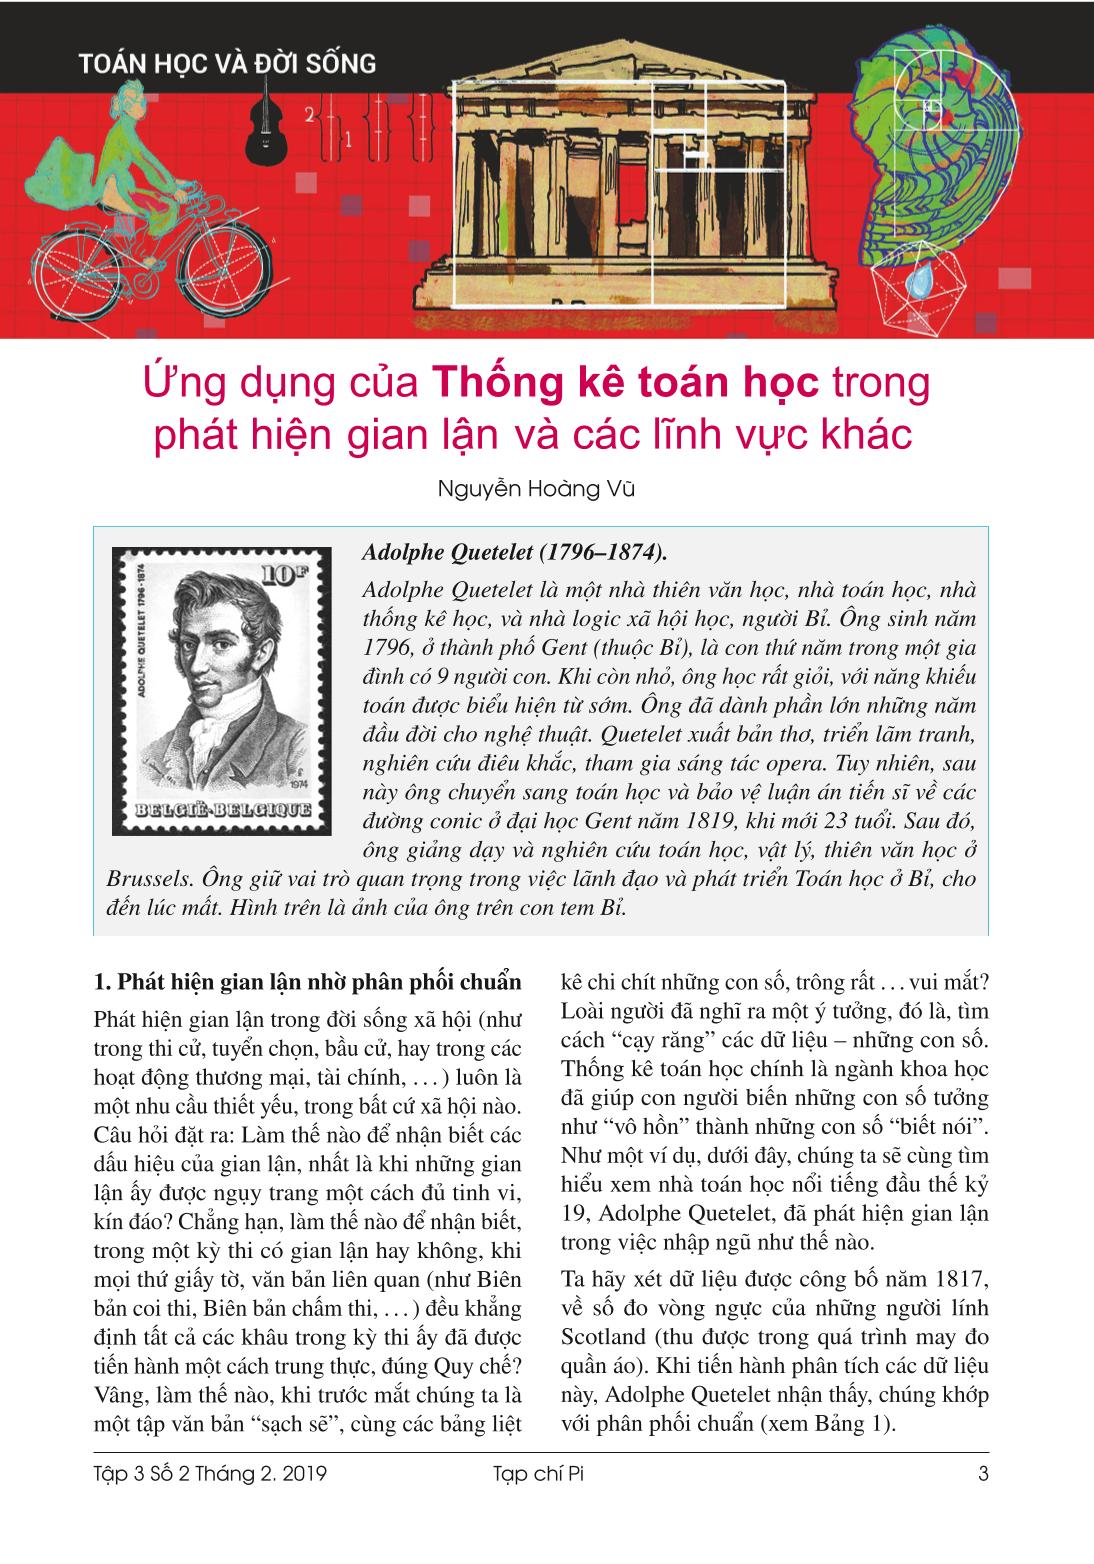 Tạp chí Pi- Hội Toán học Việt Nam số 2/ tháng 2 năm 2019